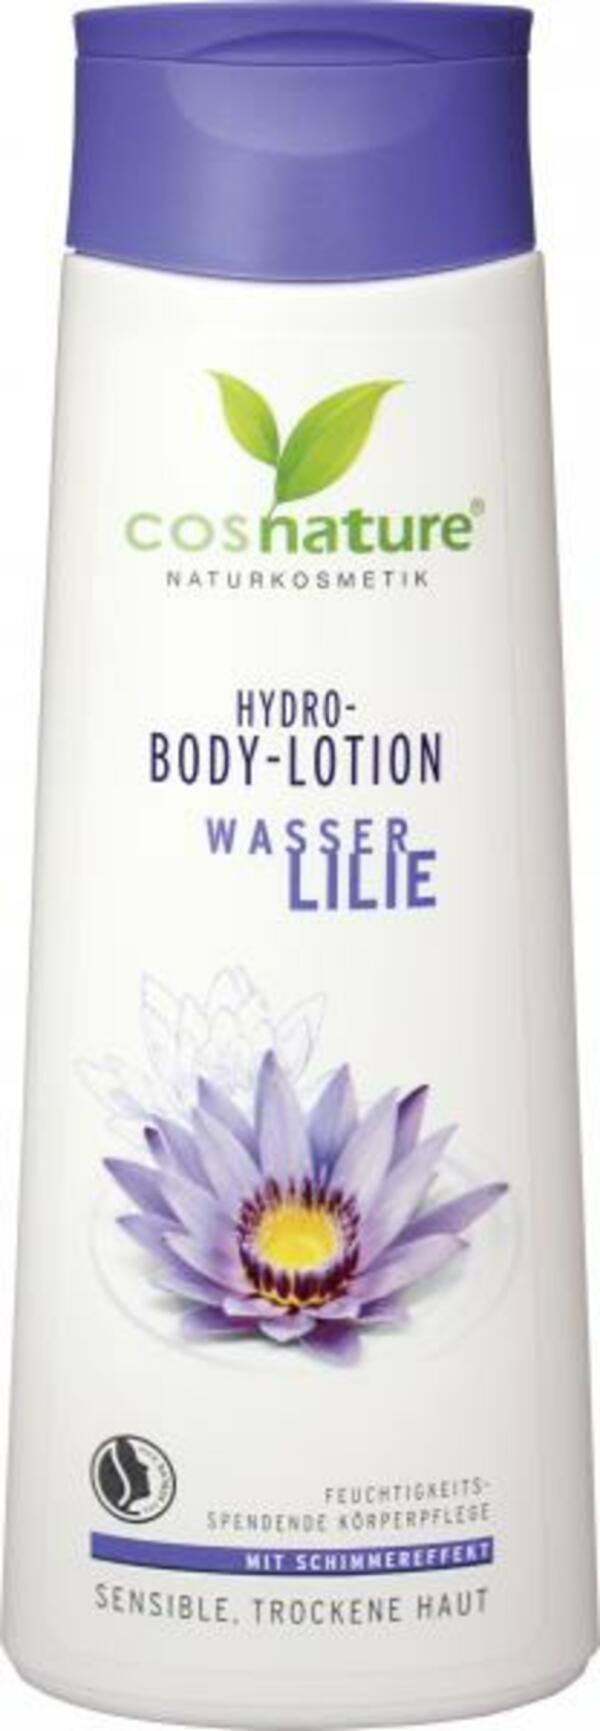 Bild 1 von Cosnature Hydro-Body-Lotion Wasserlilie